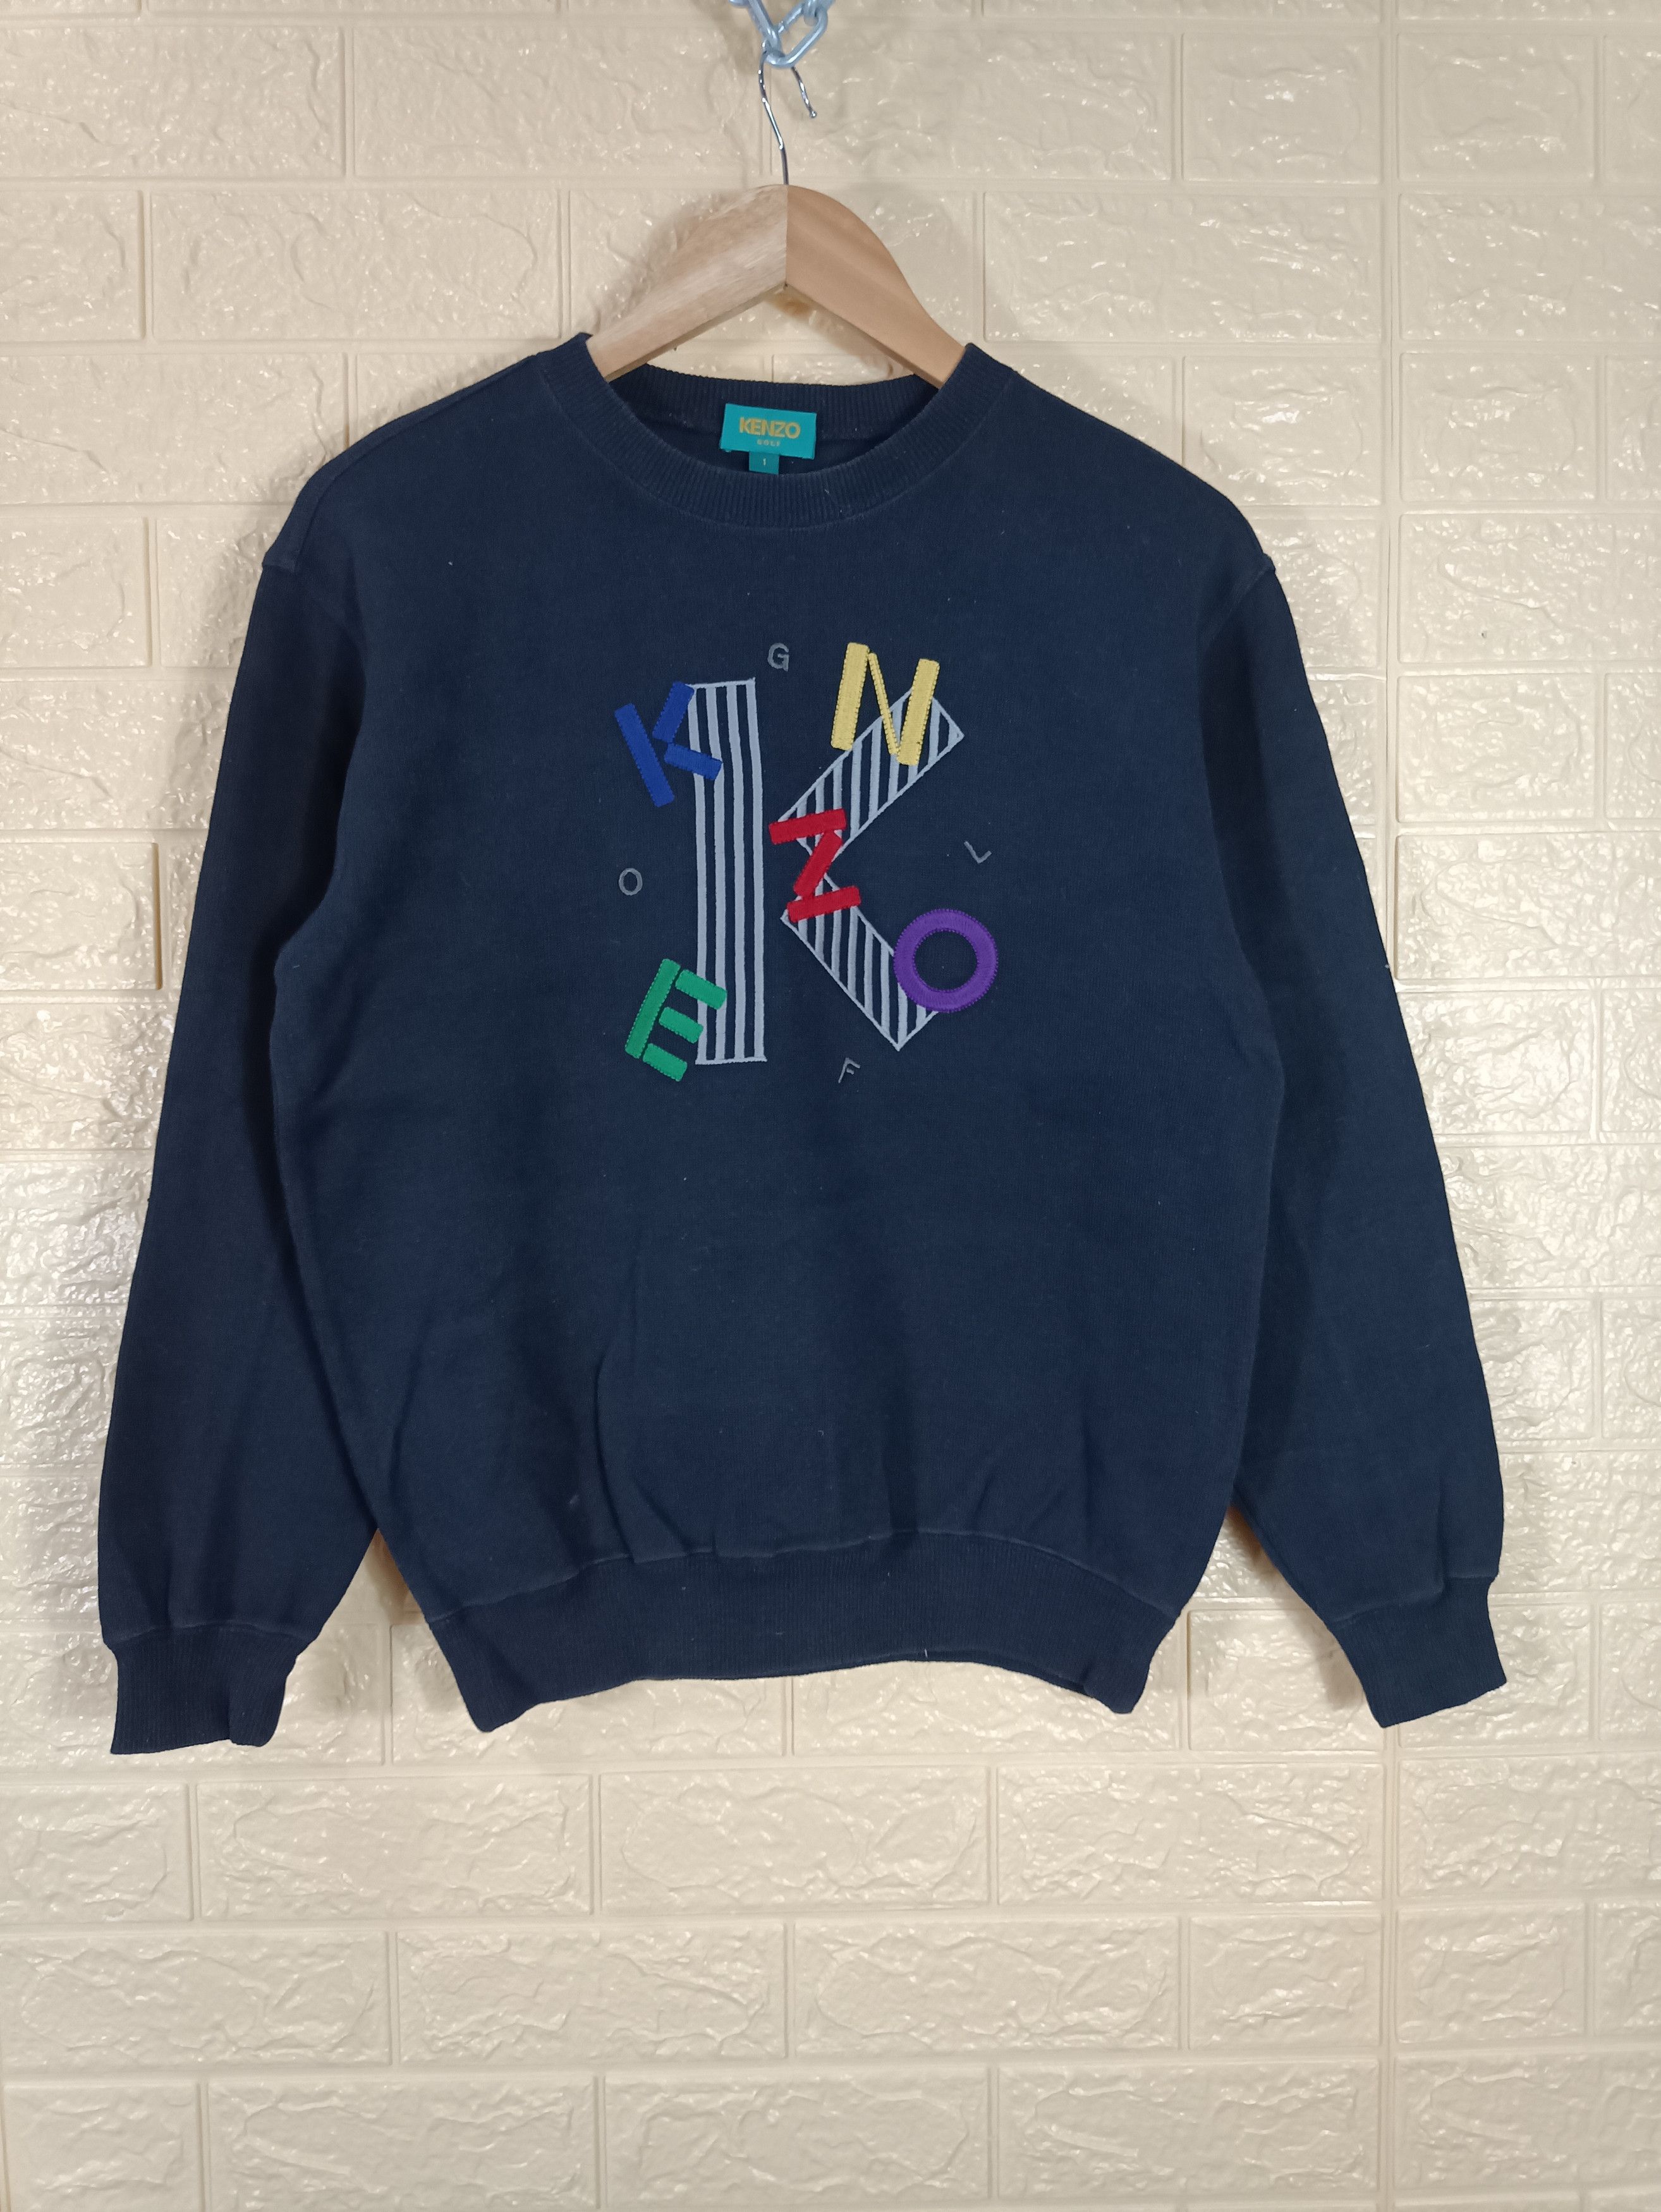 Kenzo Golf Sweatshirt | Grailed